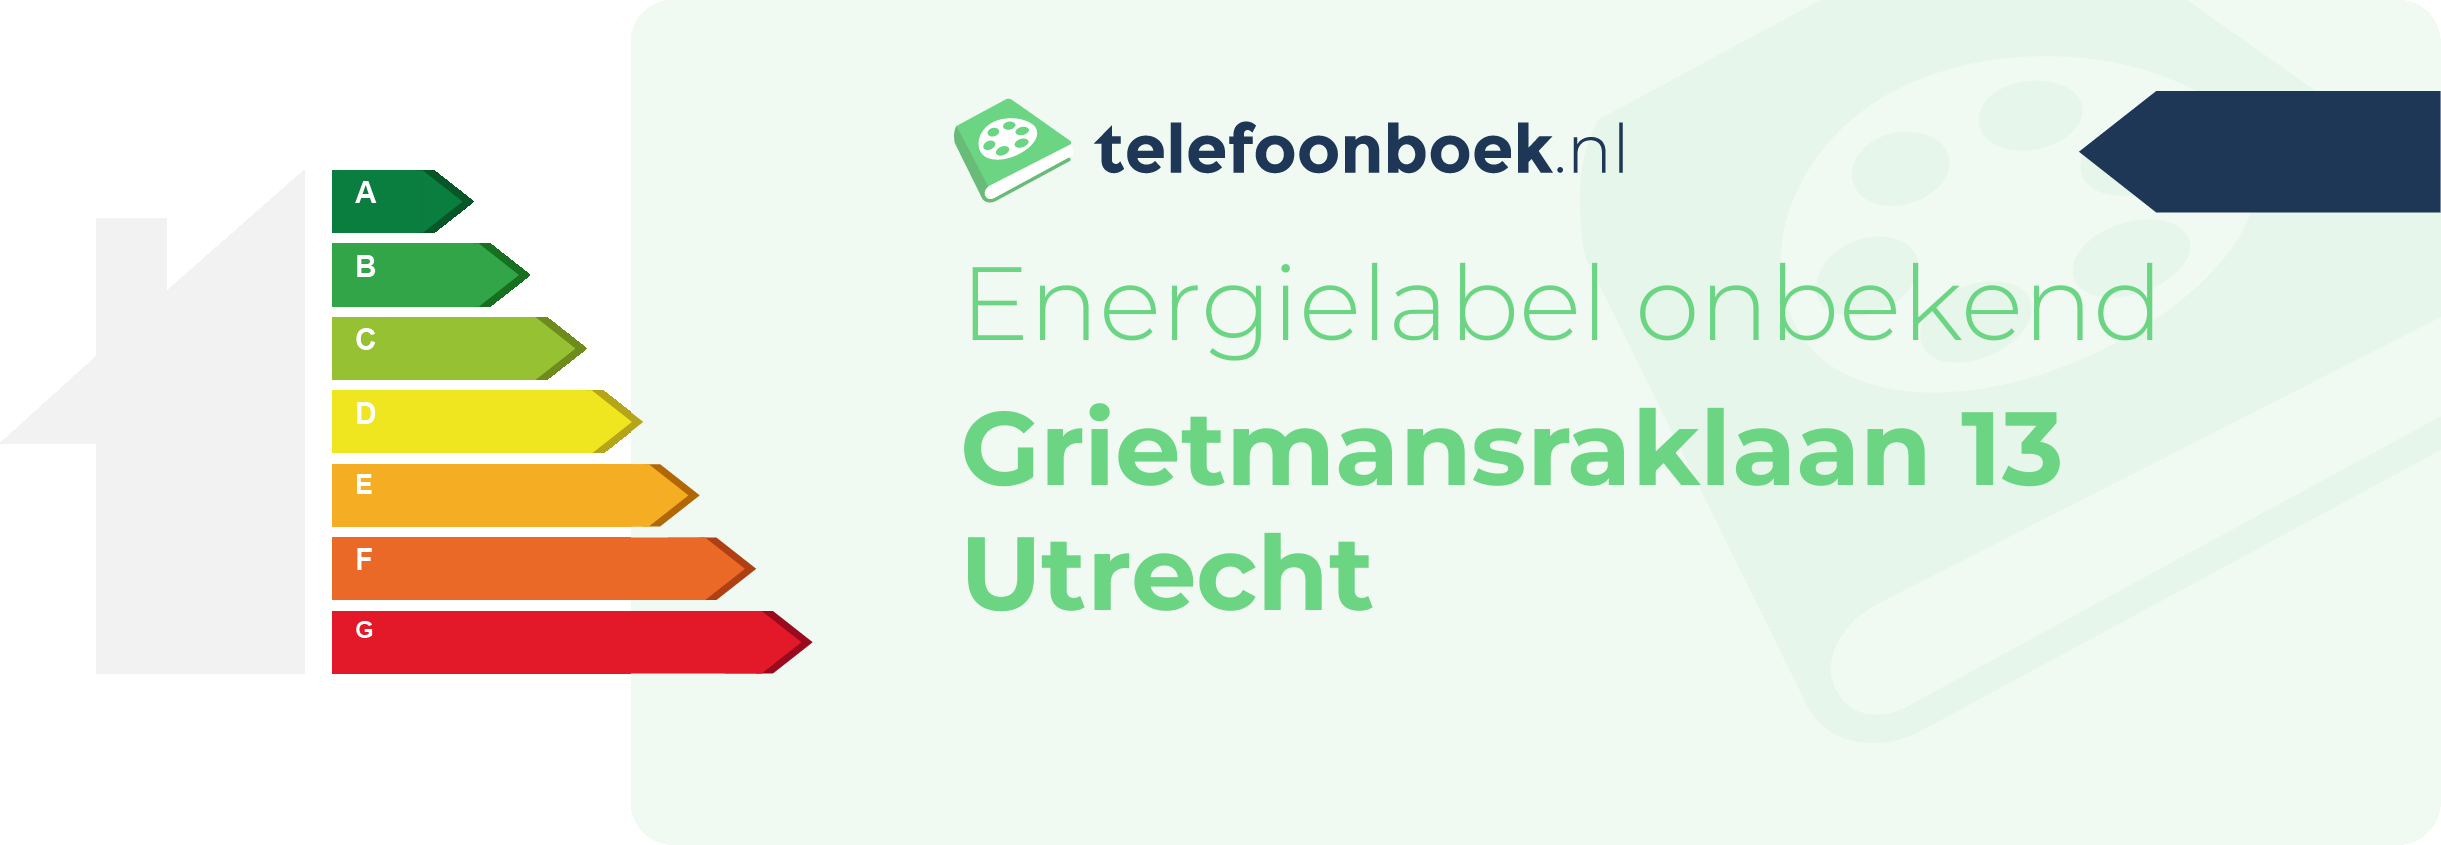 Energielabel Grietmansraklaan 13 Utrecht